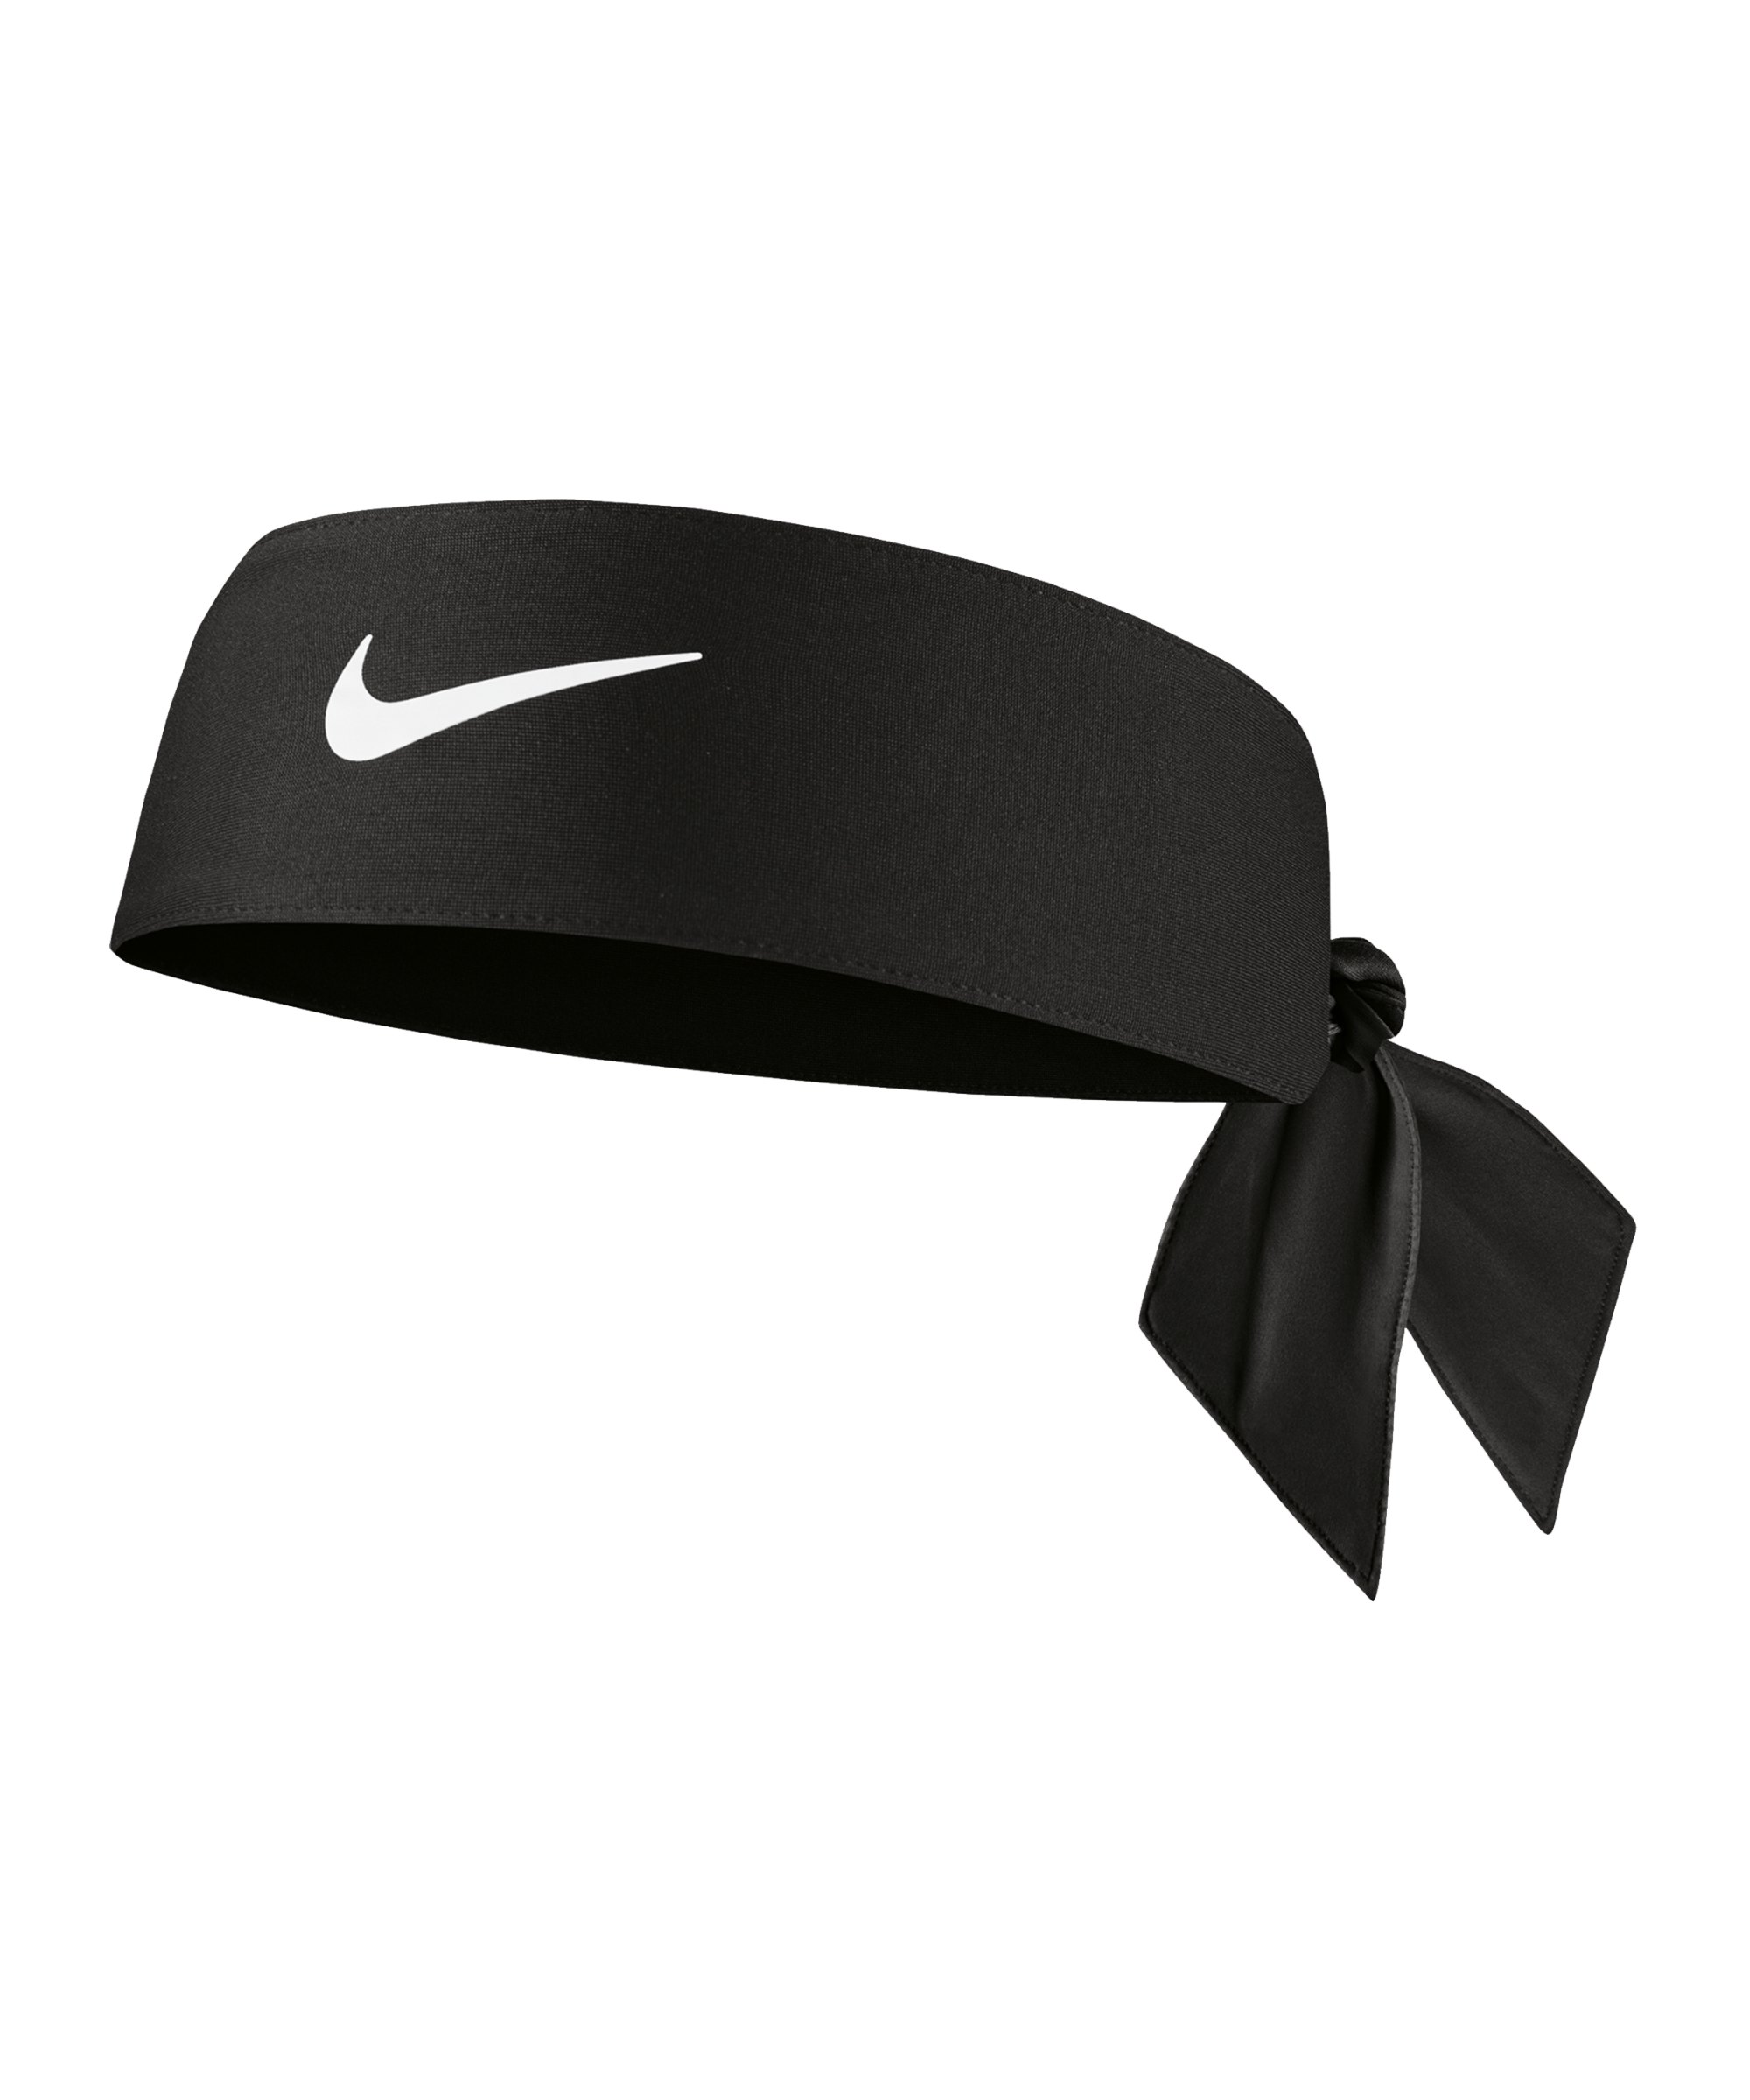 Nike Dri-FIT Head Tie 4.0 Haarband Schwarz F010 - schwarz